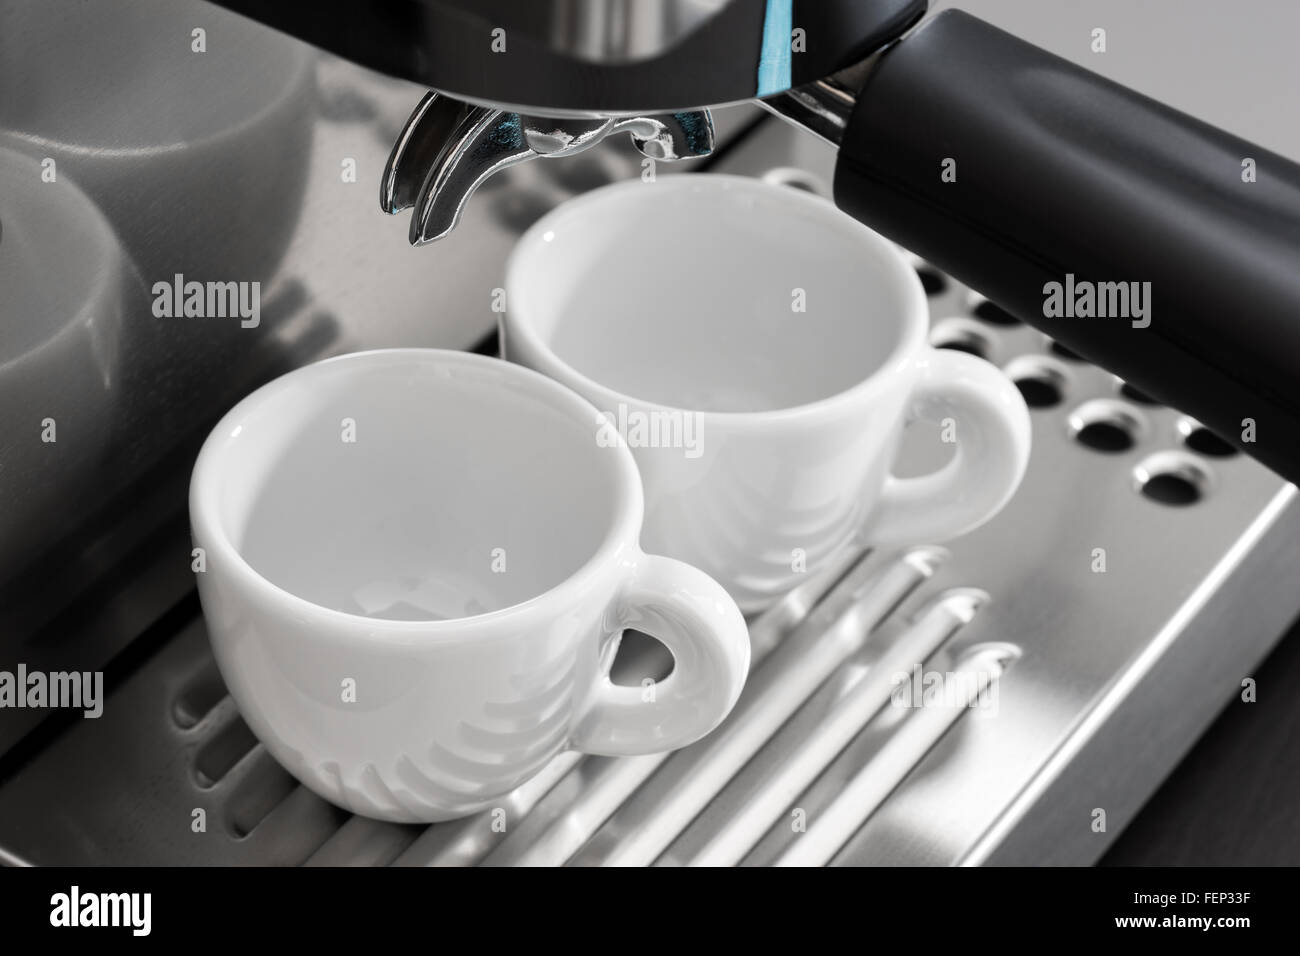 https://c8.alamy.com/compes/fep33f/preparacion-de-una-maquina-de-cafe-espresso-fep33f.jpg